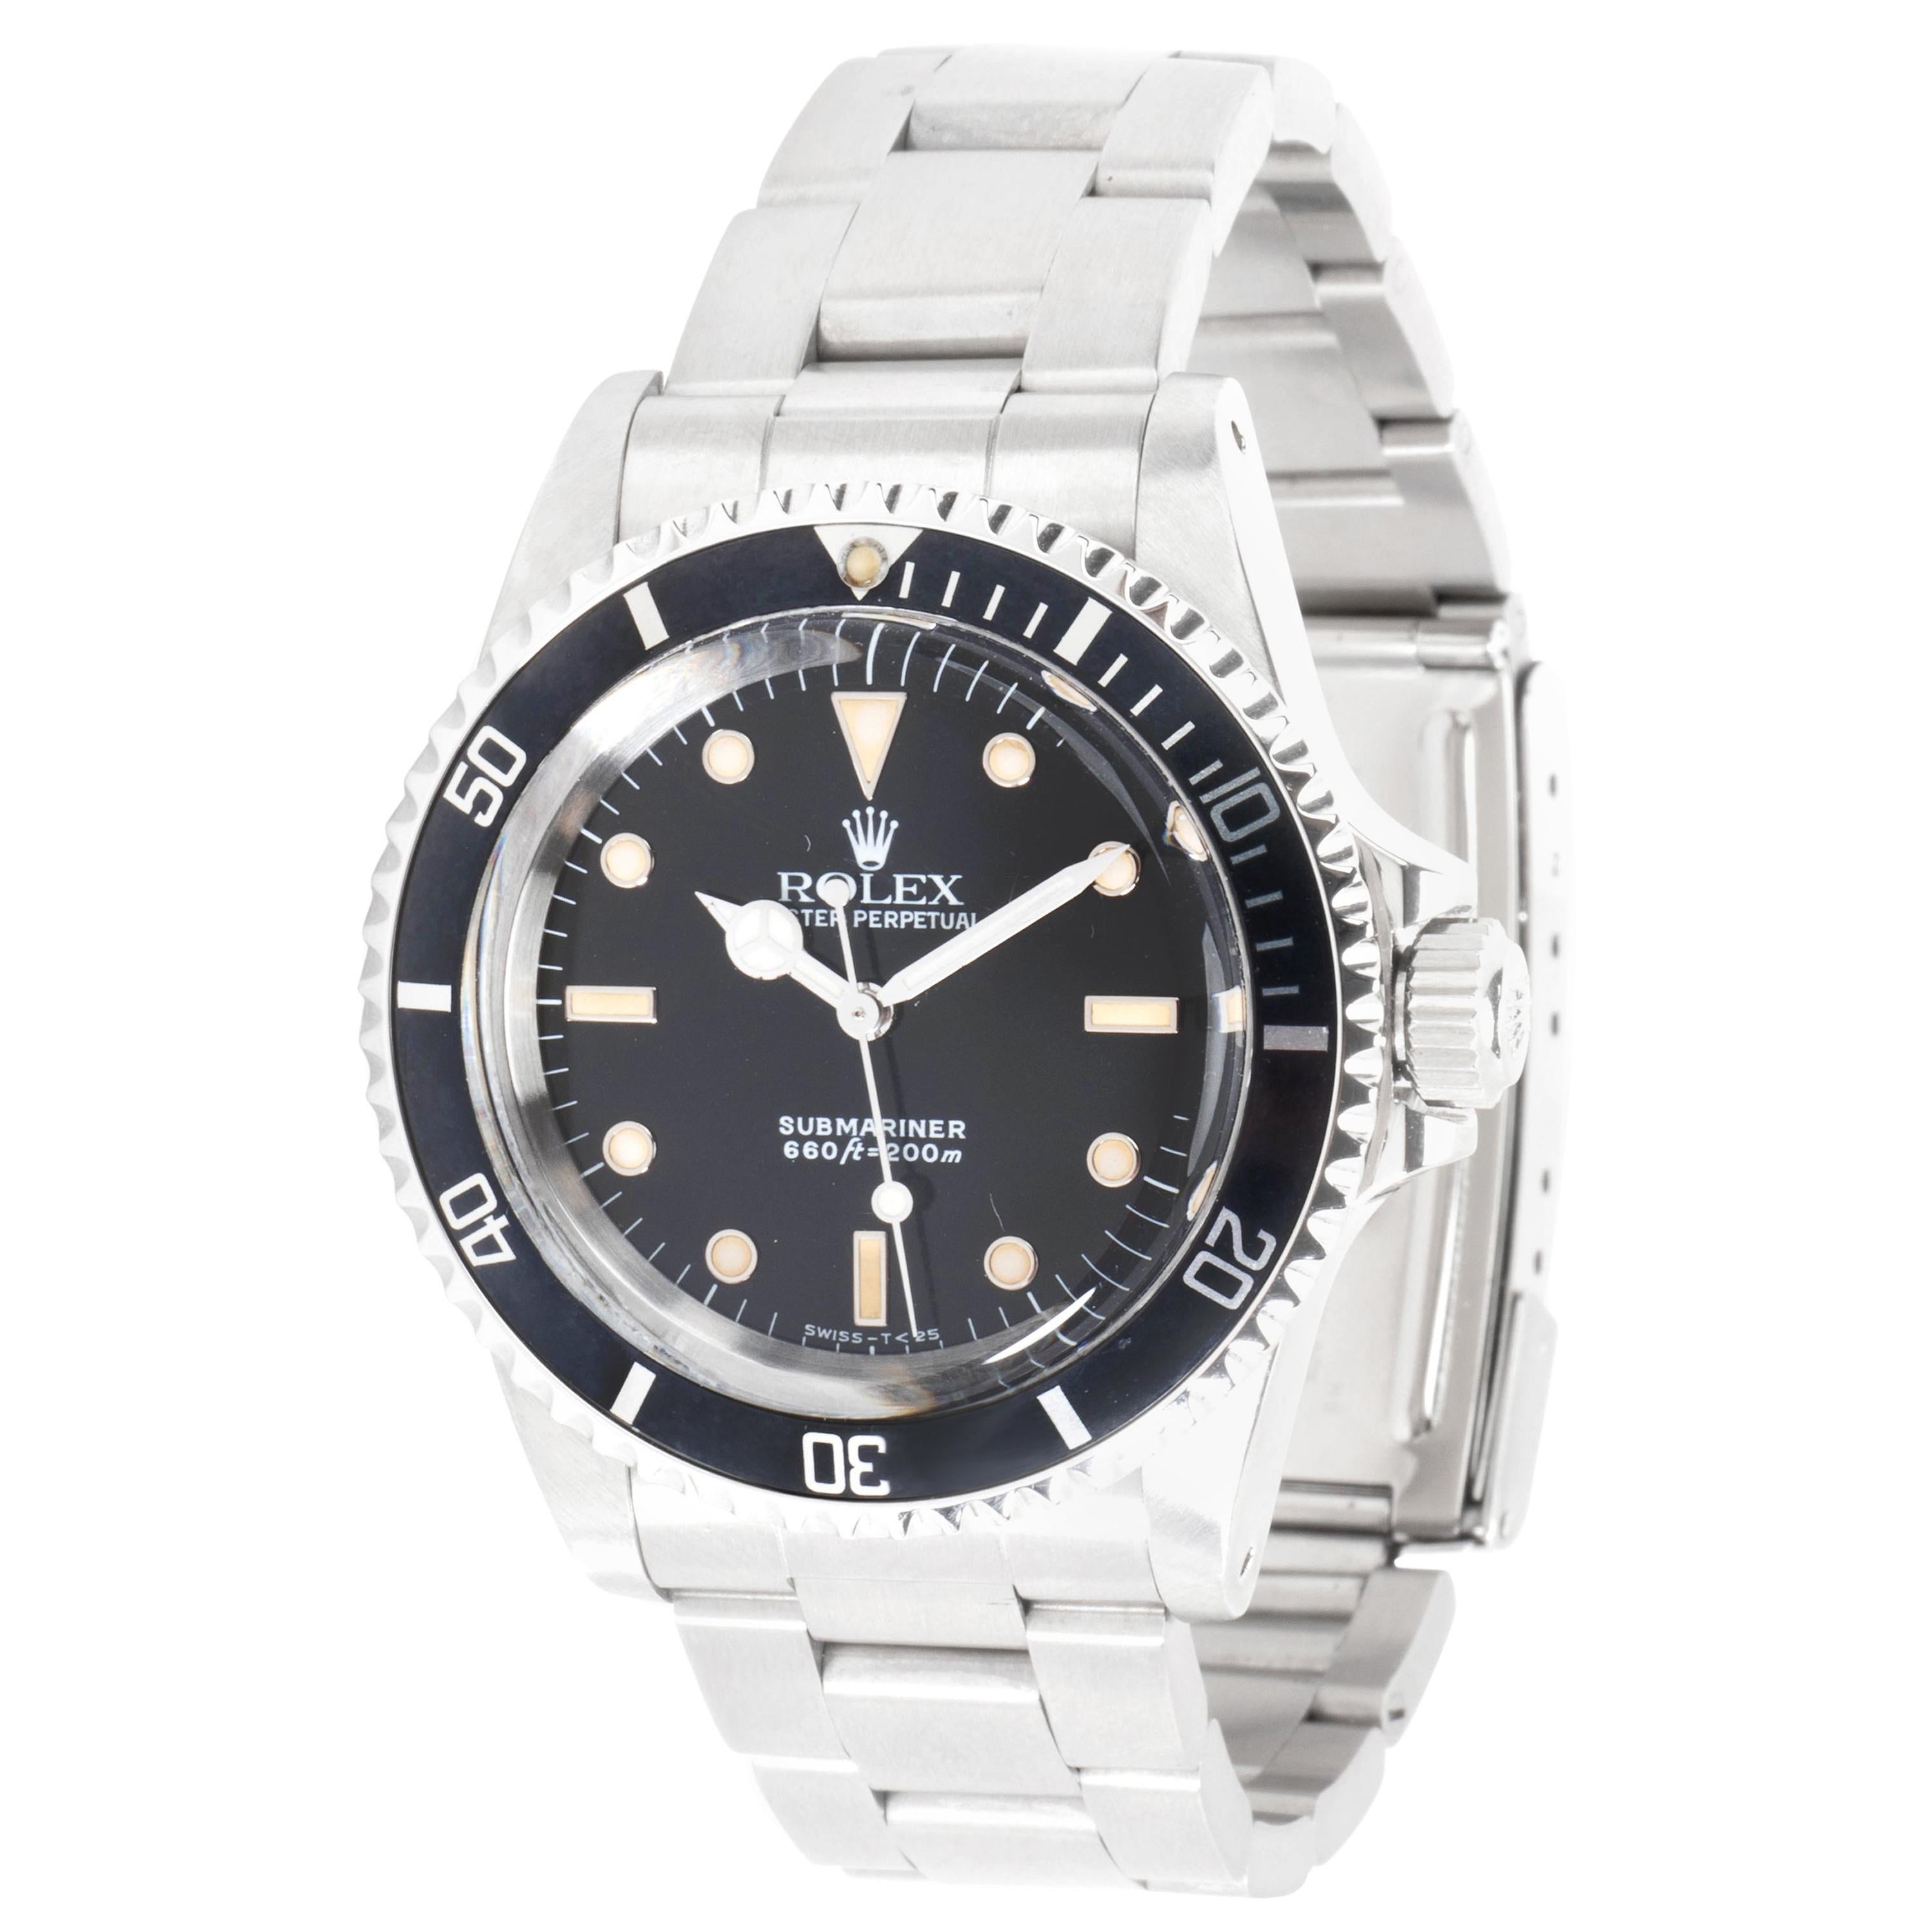 Rolex Submariner 5513 Men's Watch in Stainless Steel